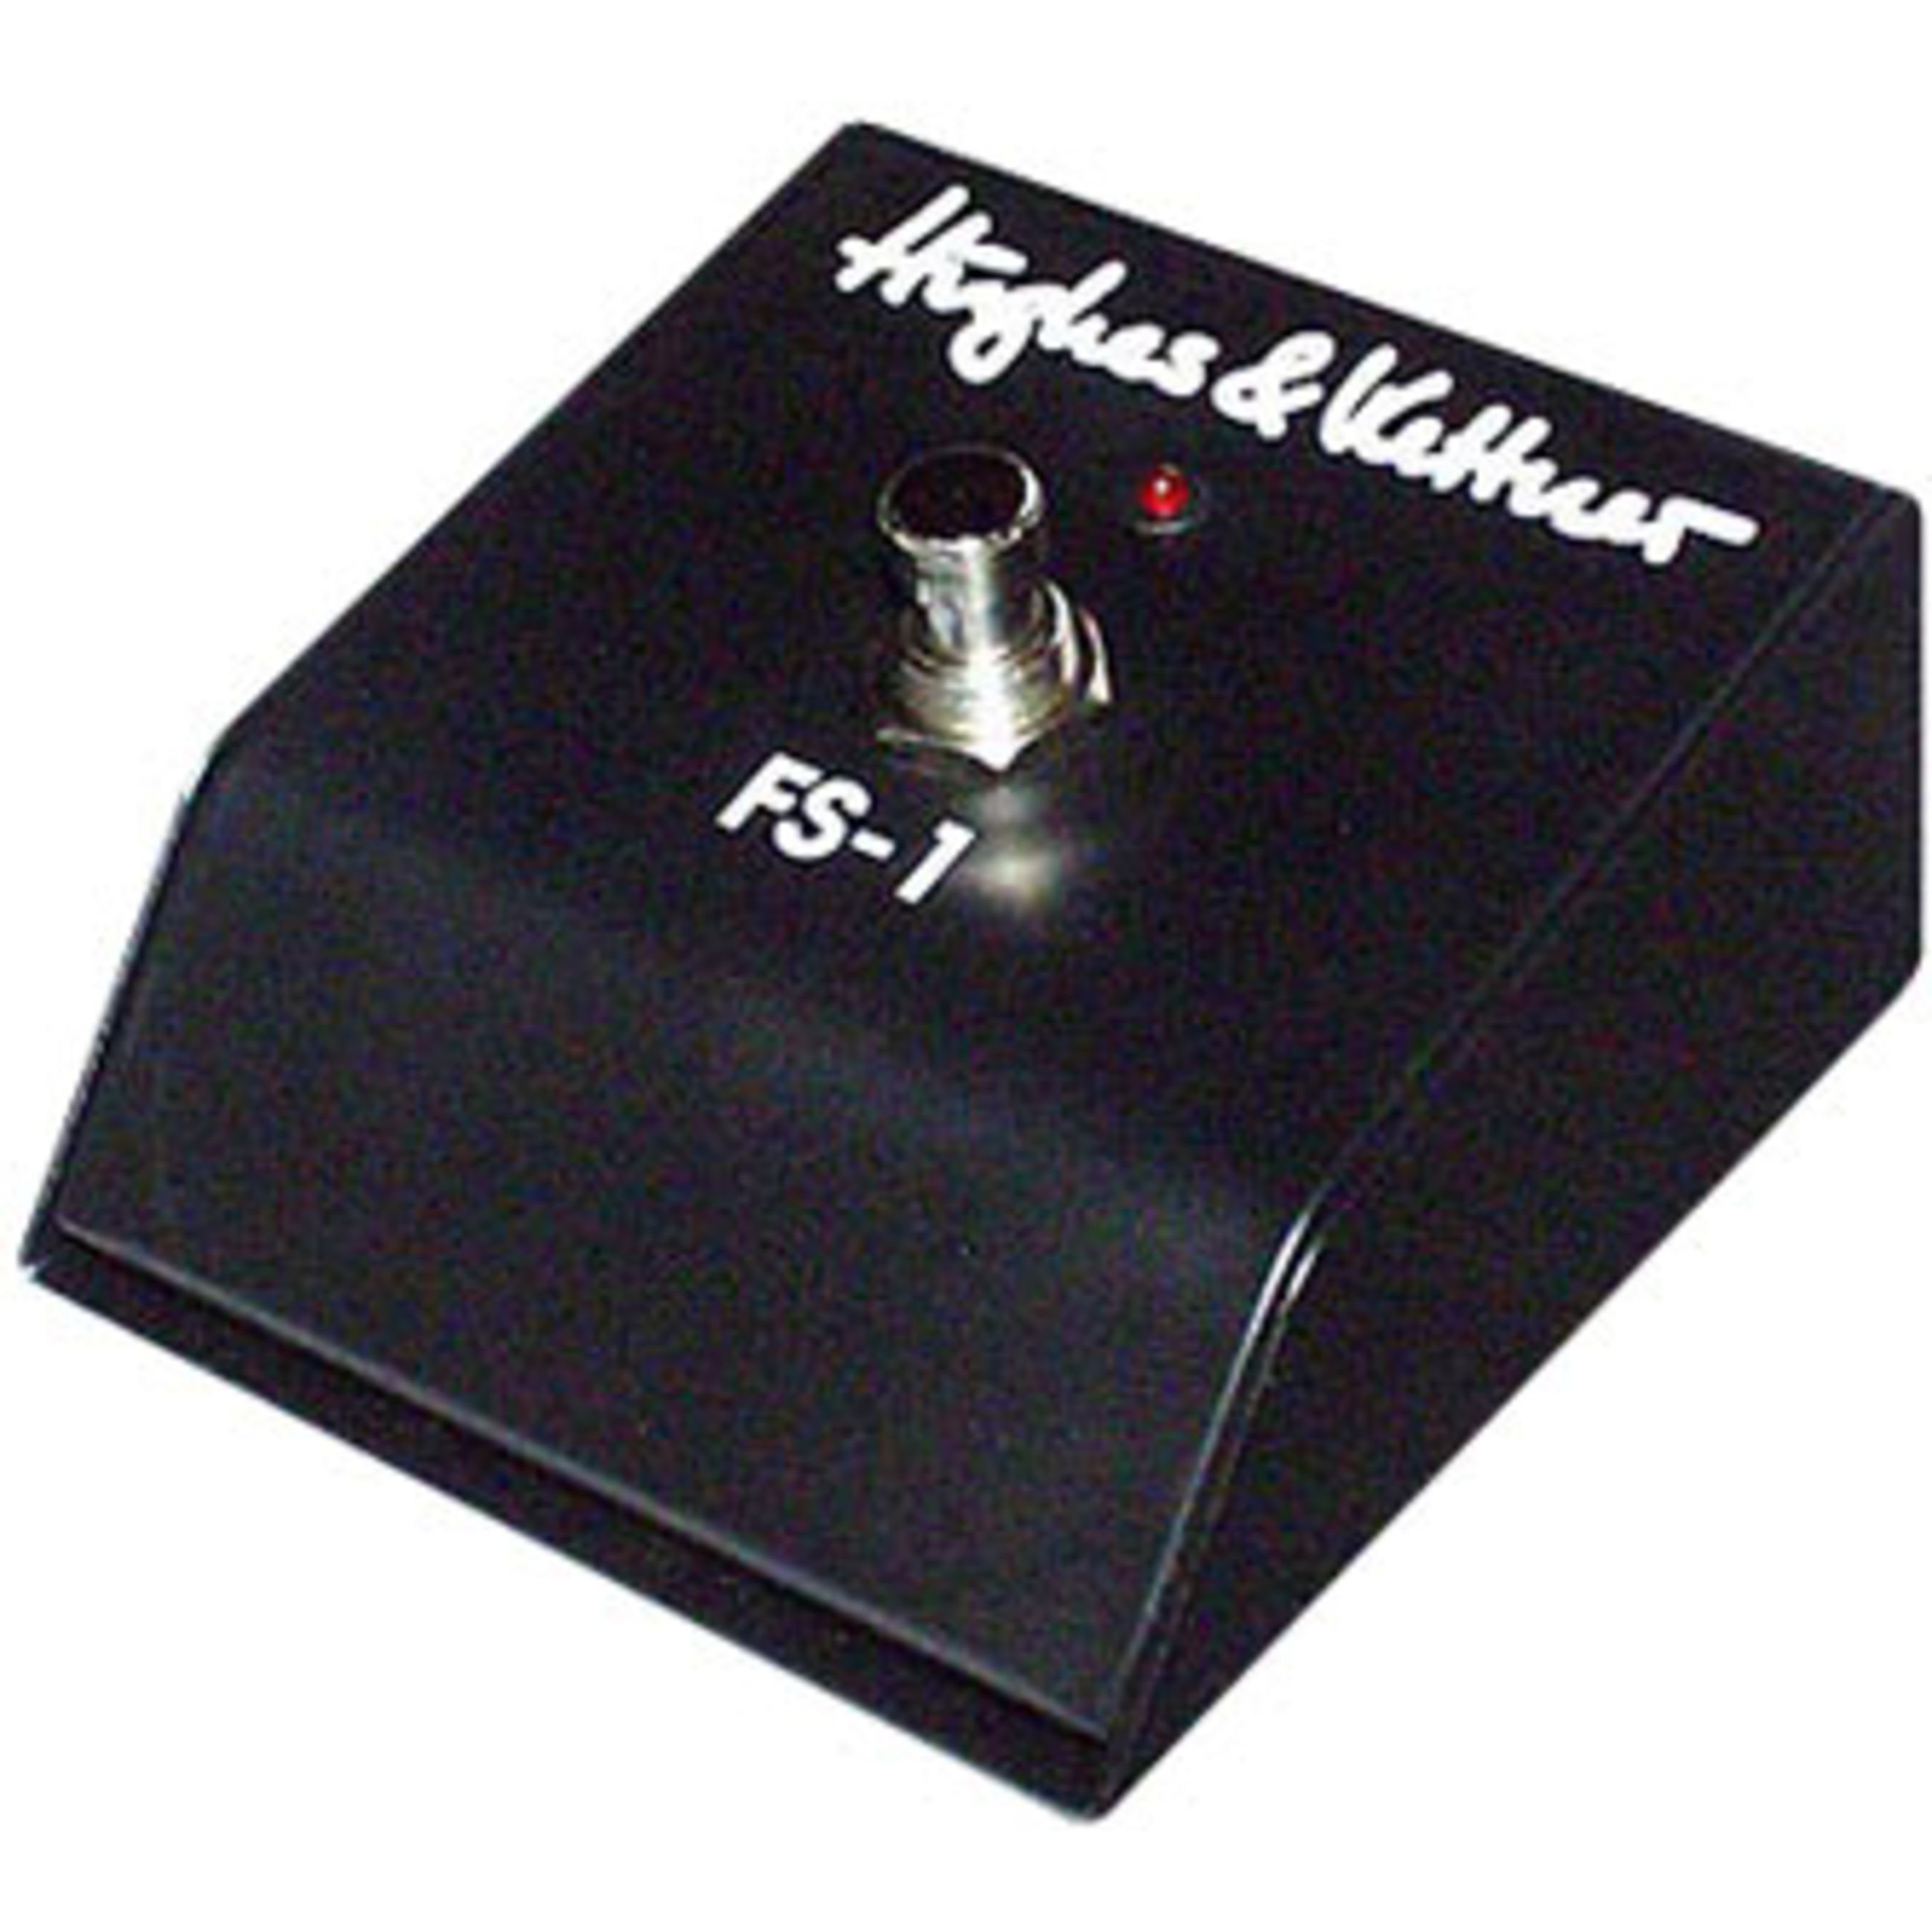 Hughes & Kettner Verstärker (FS-1 Fußschalter - Fußschalter für Gitarrenverstärker)